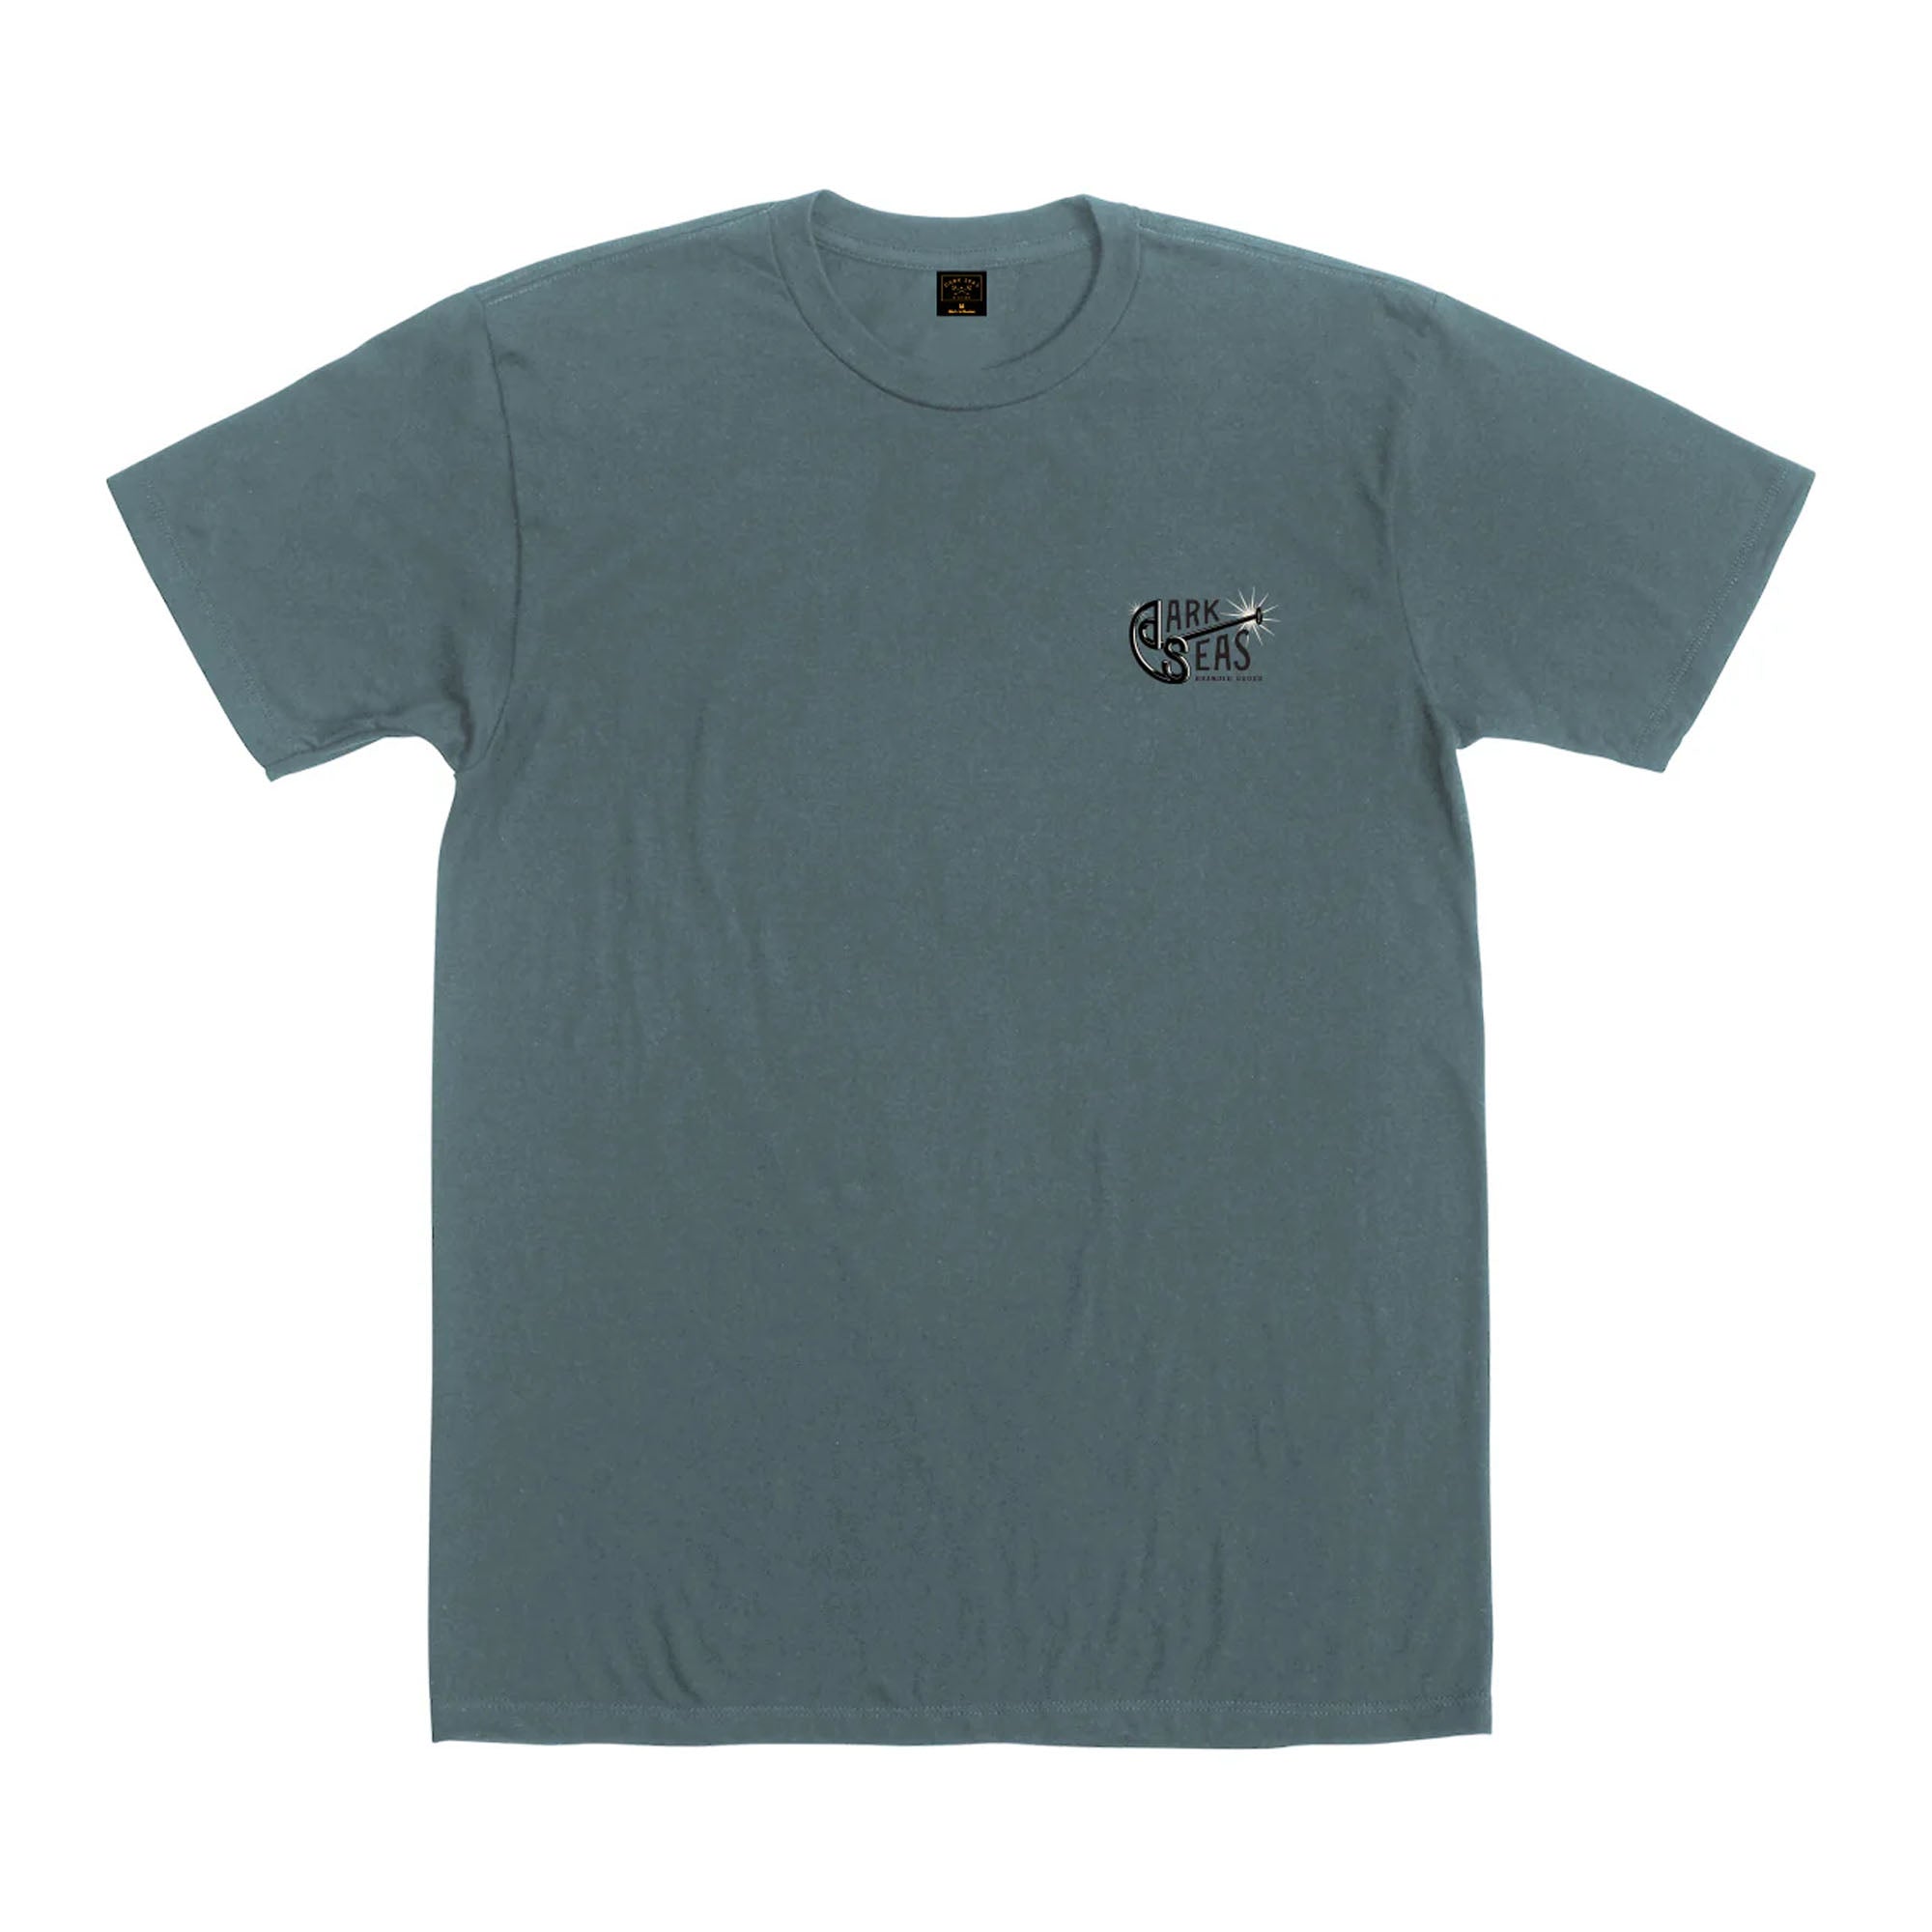 Dark Seas Branding Iron Pigment Men's S/S T-Shirt